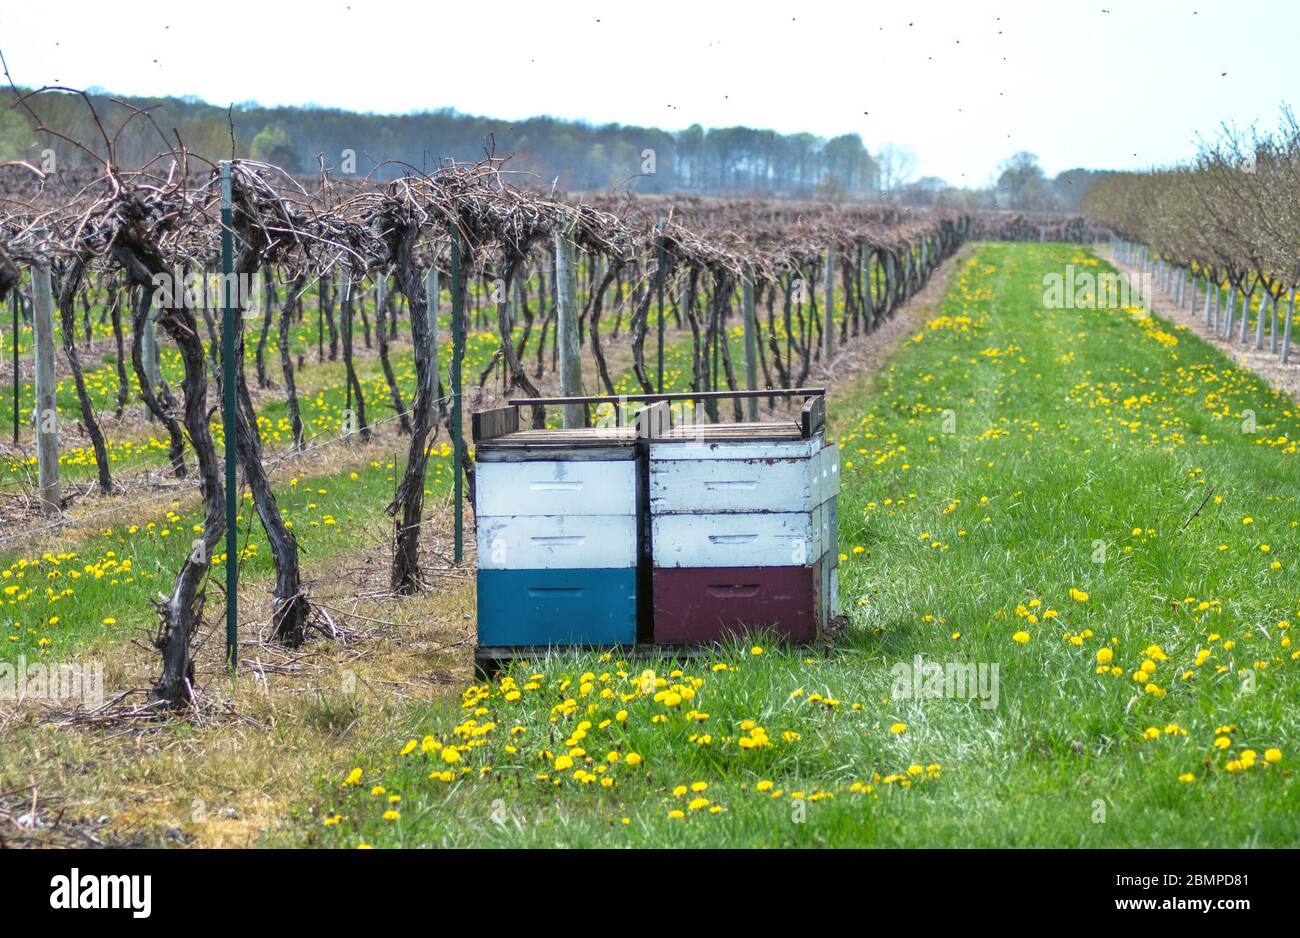 Le api vengono portate per impollinare uva e alberi da frutta in questo vigneto e frutteto del Michigan USA Foto Stock